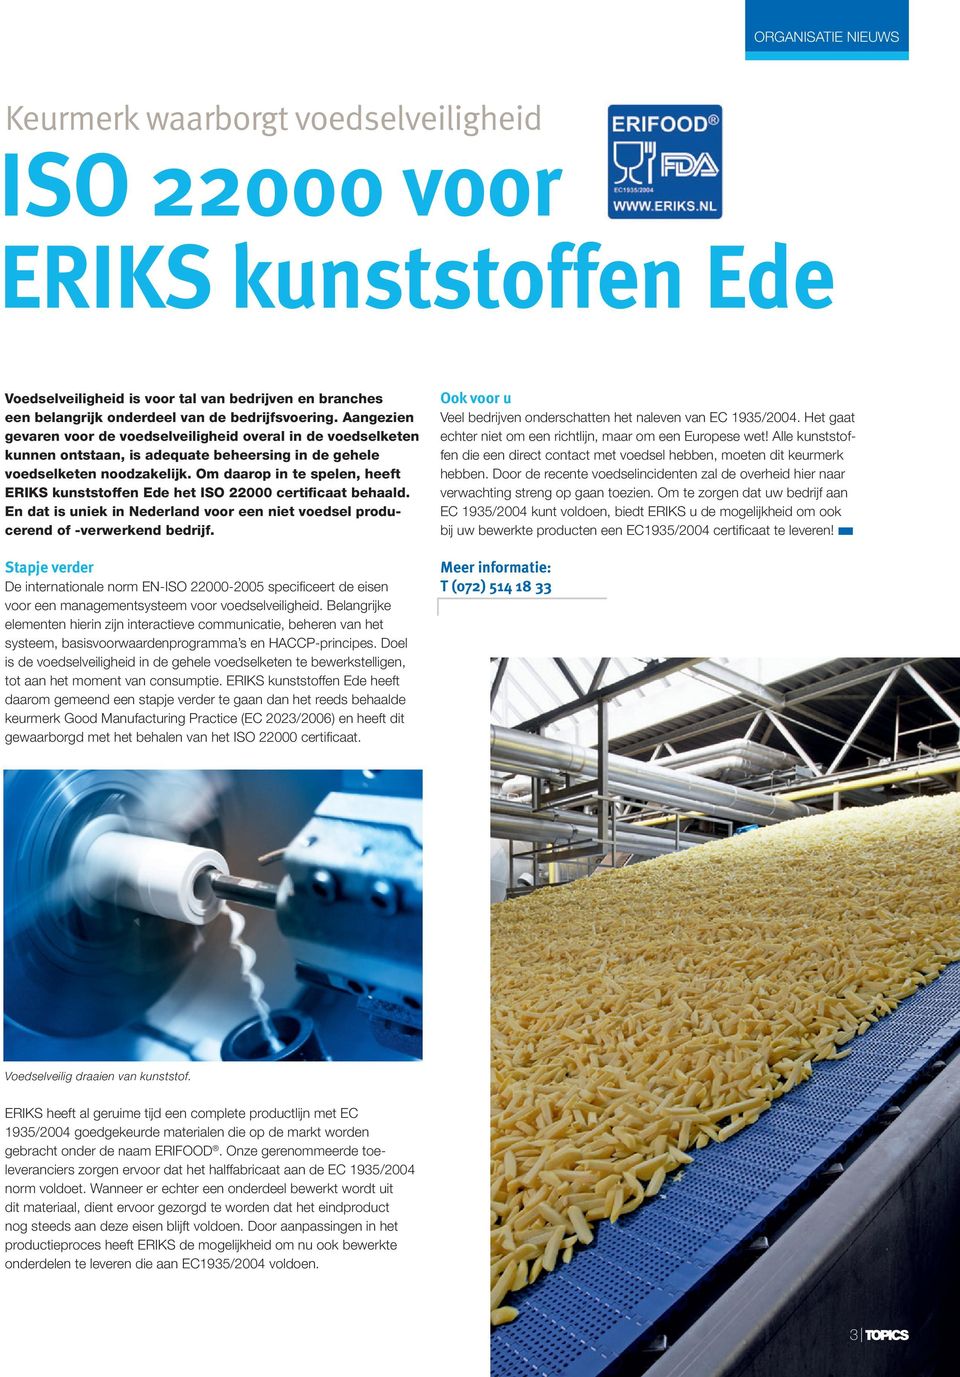 Om daarop i te spele, heeft ERIKS kuststoffe Ede het ISO 22000 certificaat behaald. E dat is uiek i Nederlad voor ee iet voedsel producered of -verwerked bedrijf.